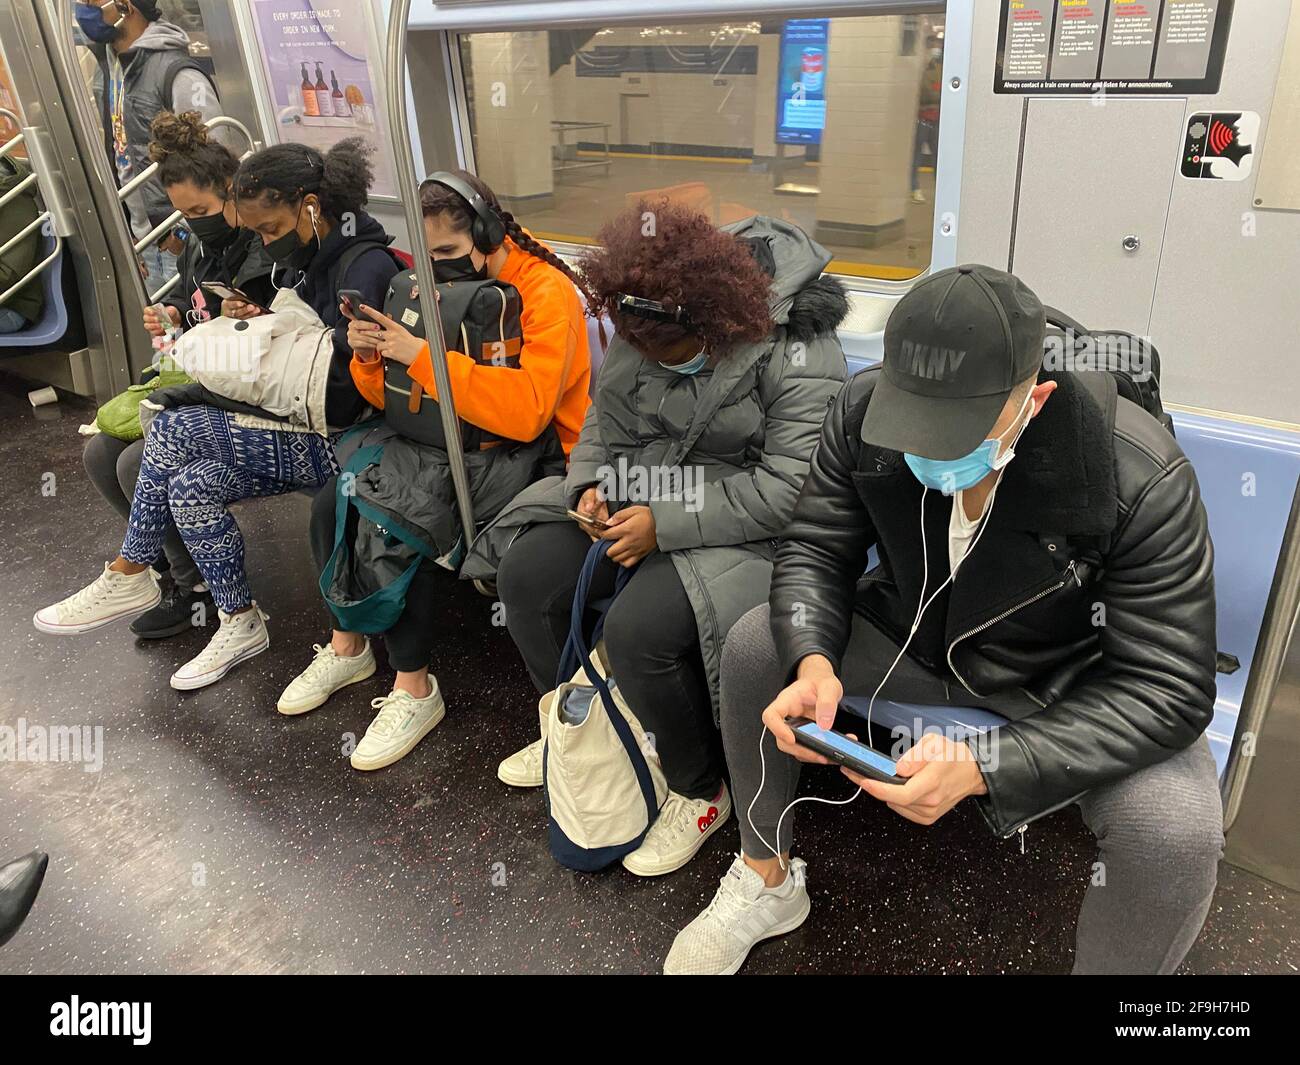 Masken wie Handys sind jetzt ein regelmäßiger Bestandteil der U-Bahn-Züge in New York City zu fahren, da die Covid-19-Pandemie in ihr zweites Jahr geht. Fahrer scheinen sich nicht zu sehr um soziale Distanz zu sorgen. Stockfoto